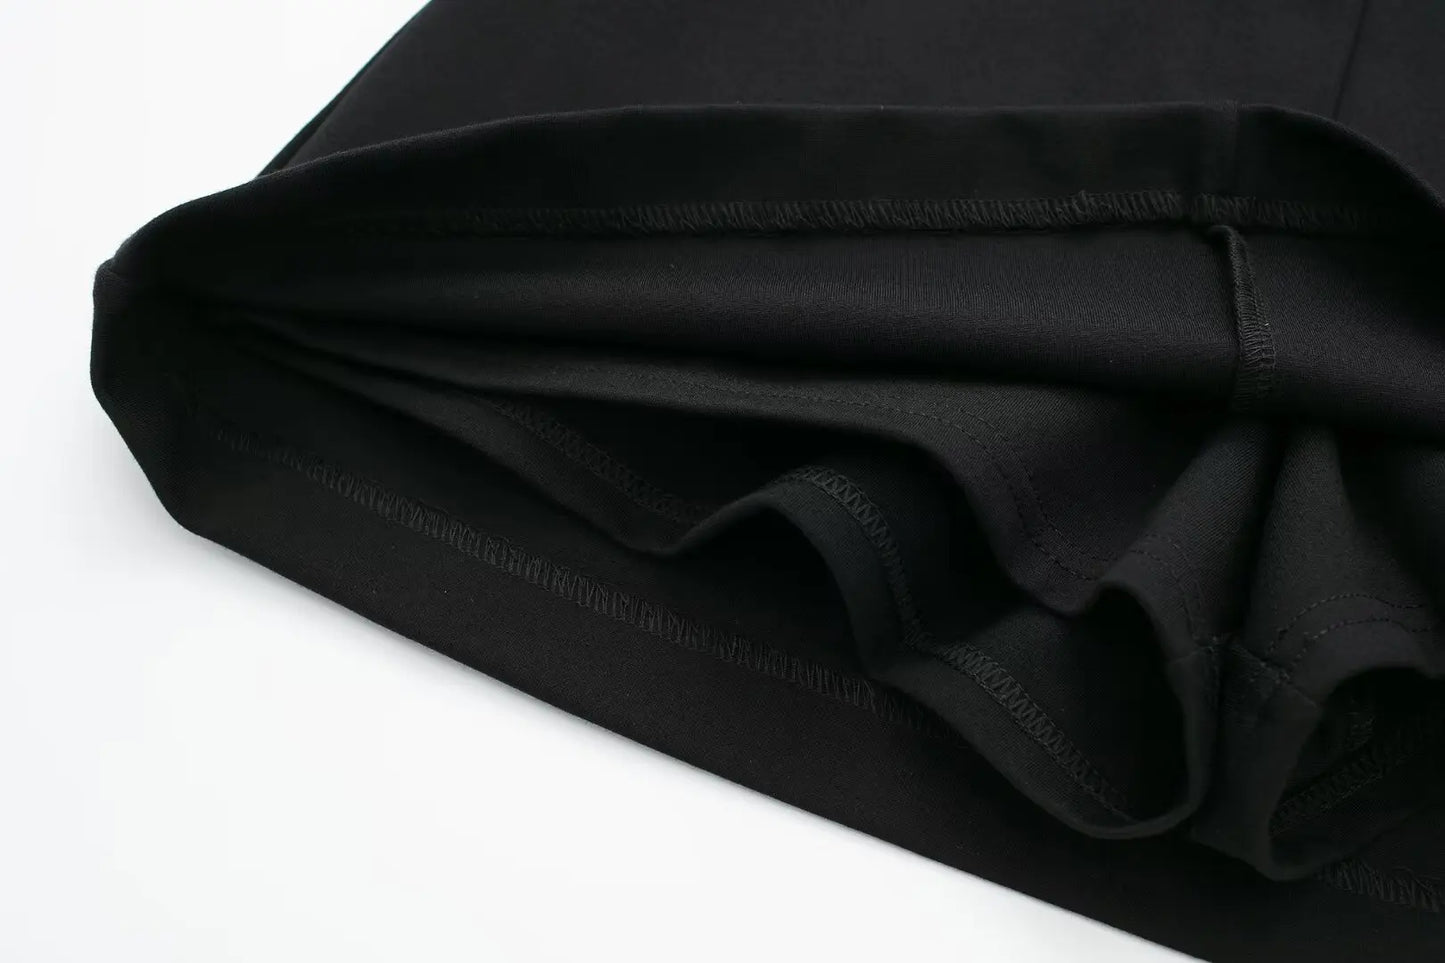 Damska spódnica z kontrastowym czarnym paskiem